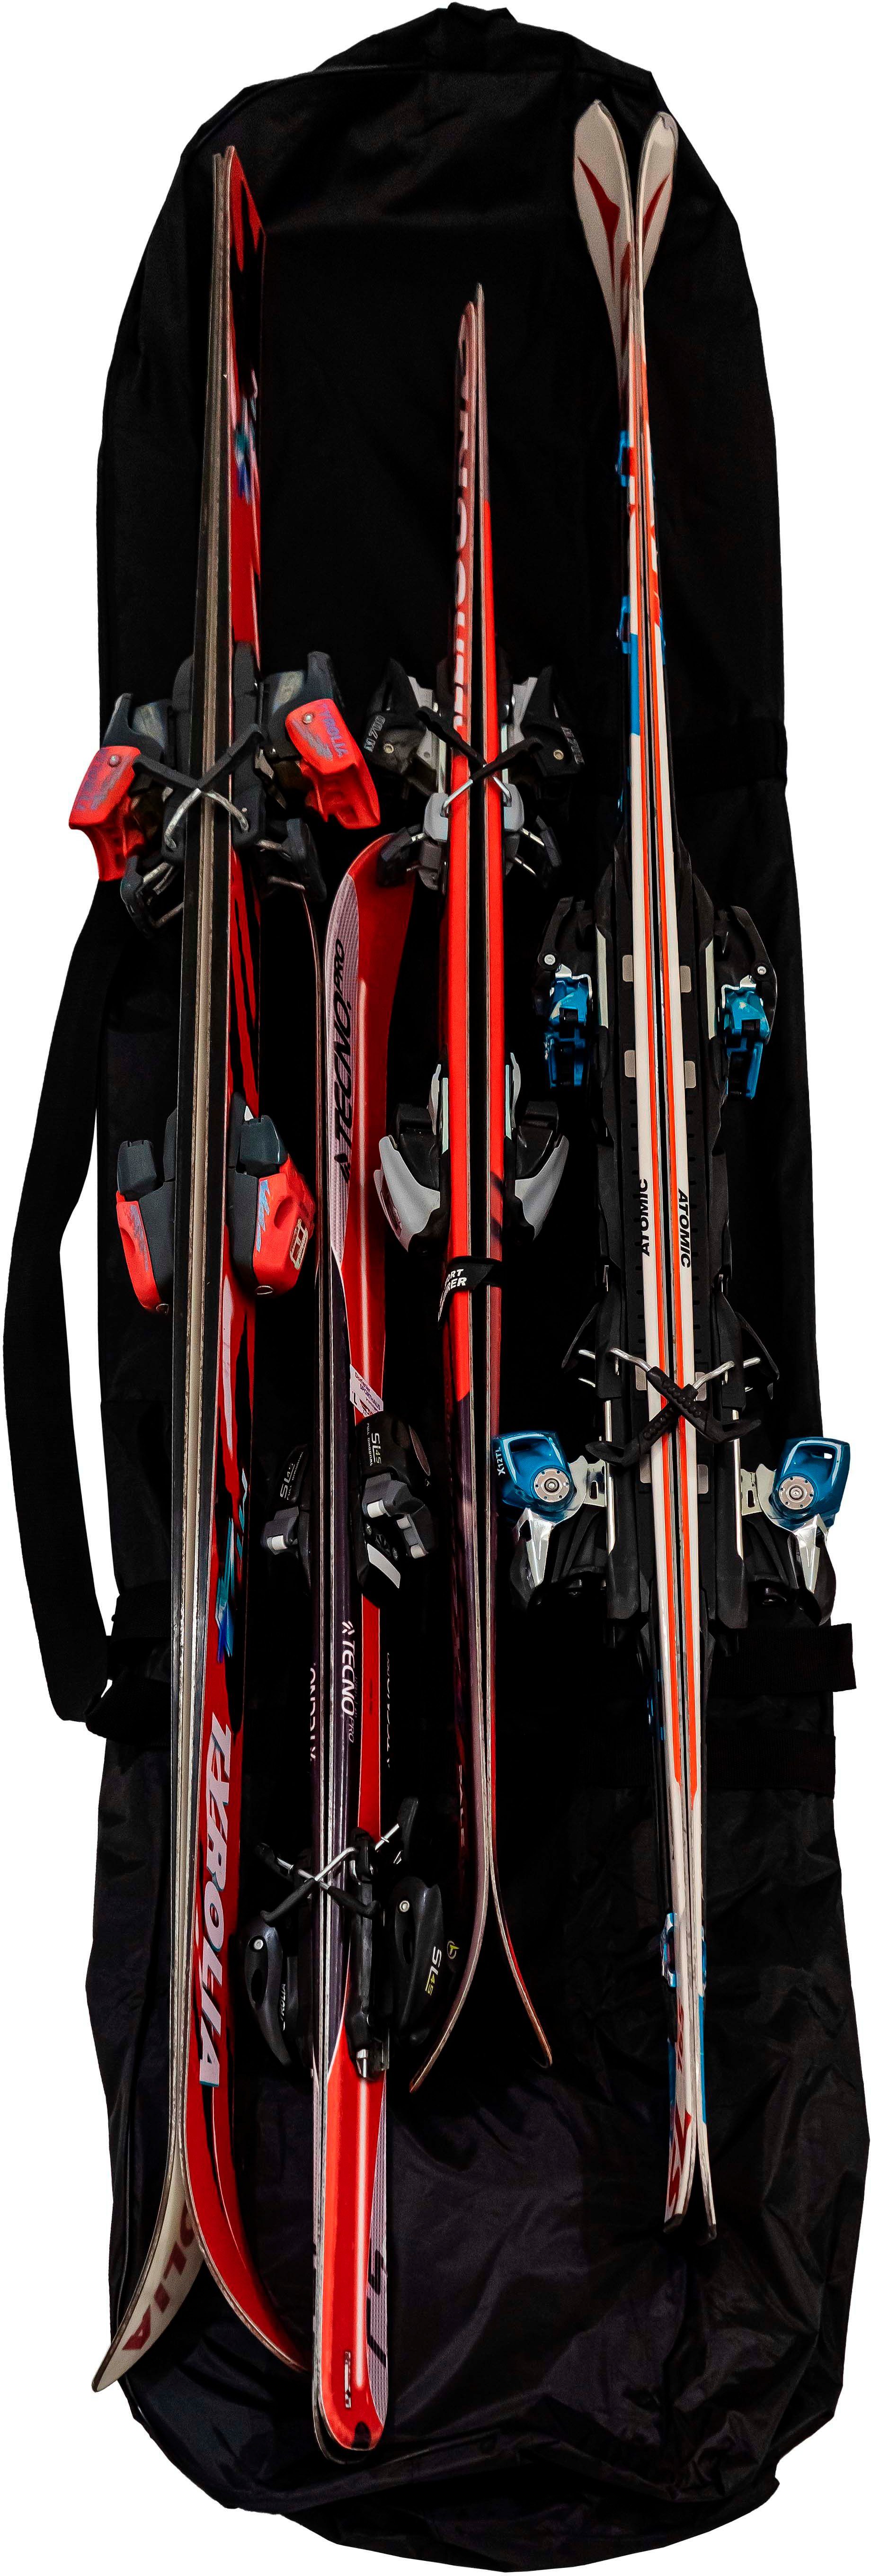 Skitasche zu Aufbewahrungsstasche, 160L Volumen, Petex 200x20x40 ca. passend Paar cm, Skisack, Ski, 4 bis schwarz